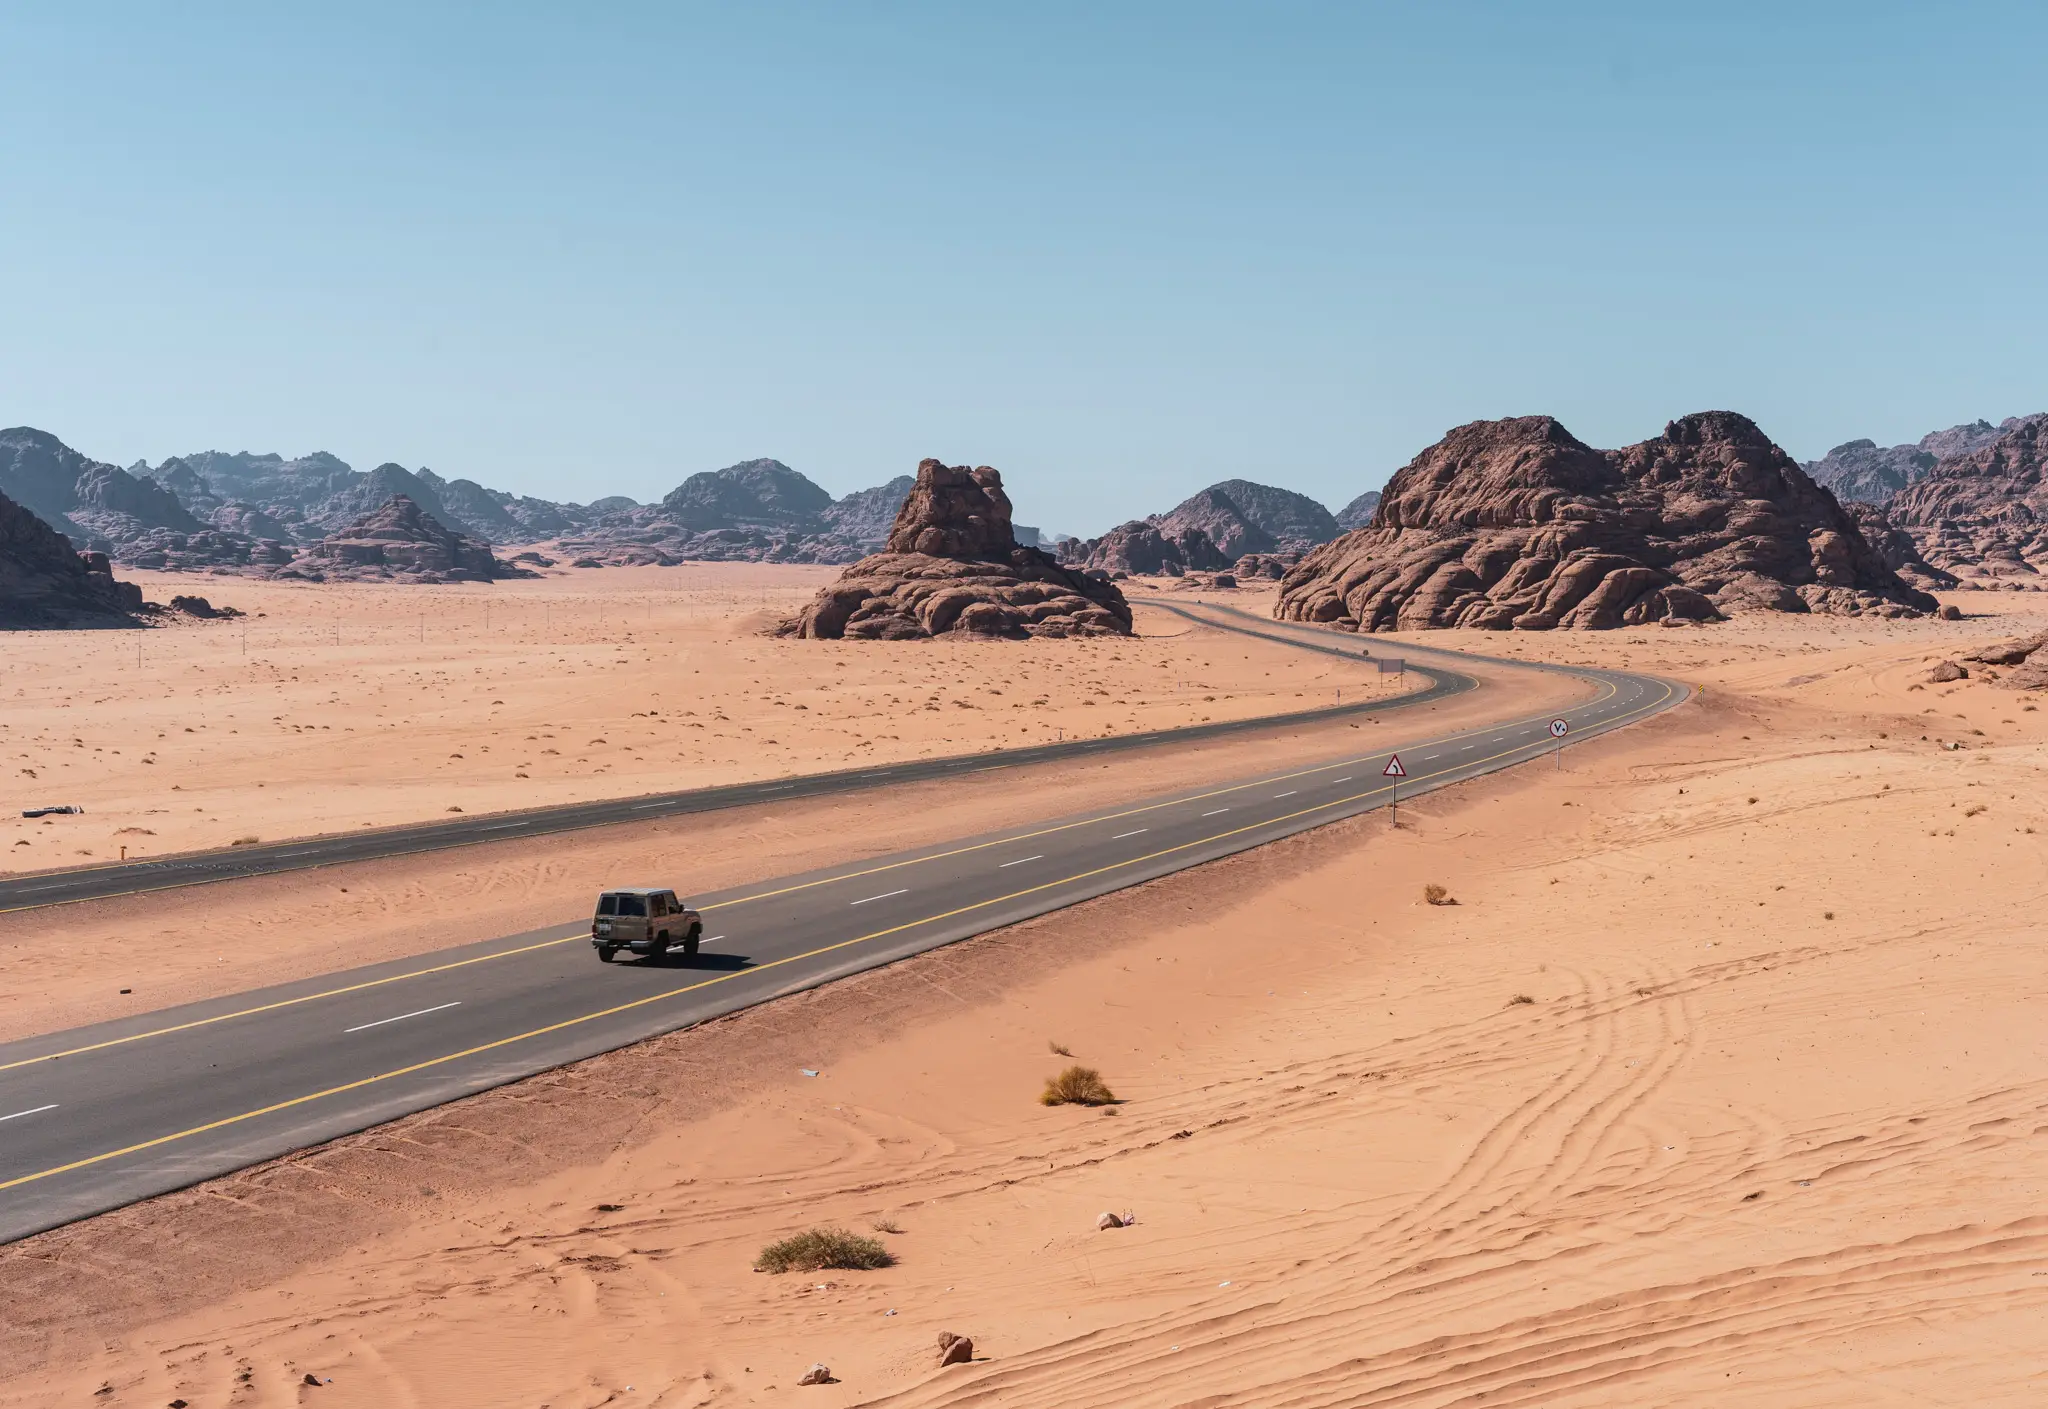 Road trippin' in Saudi Arabia